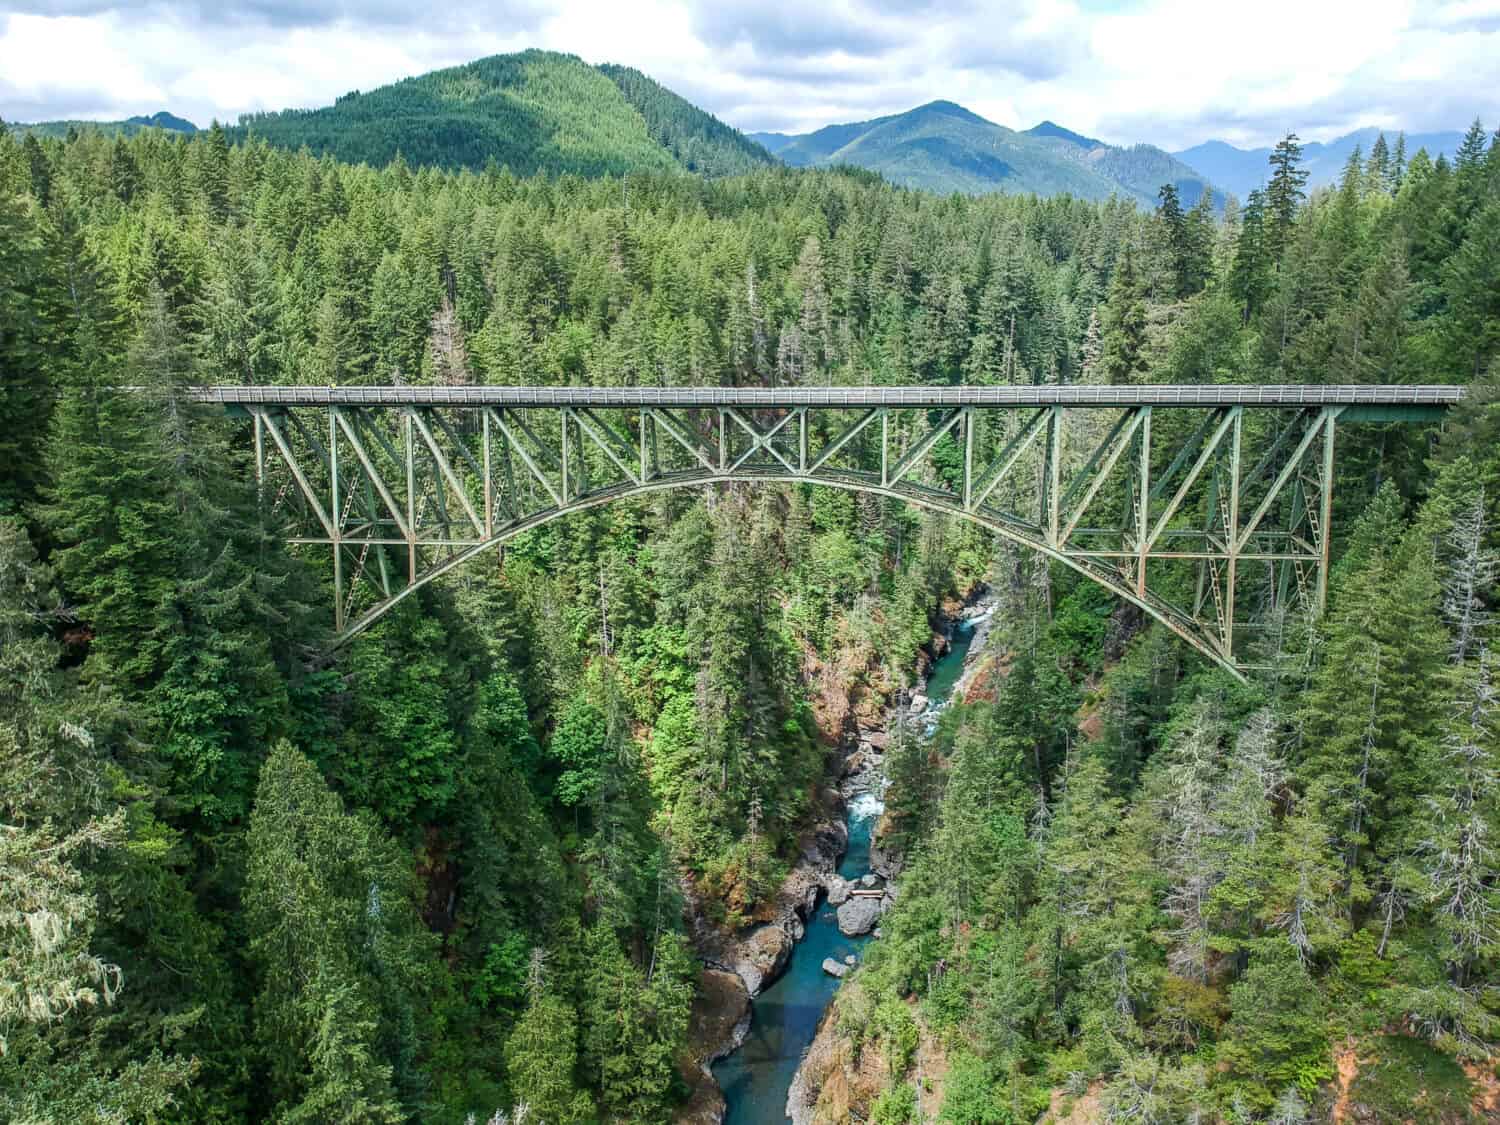 High Steel Bridge, un ponte ad arco reticolare sopra il fiume Skokomish a Washington, USA